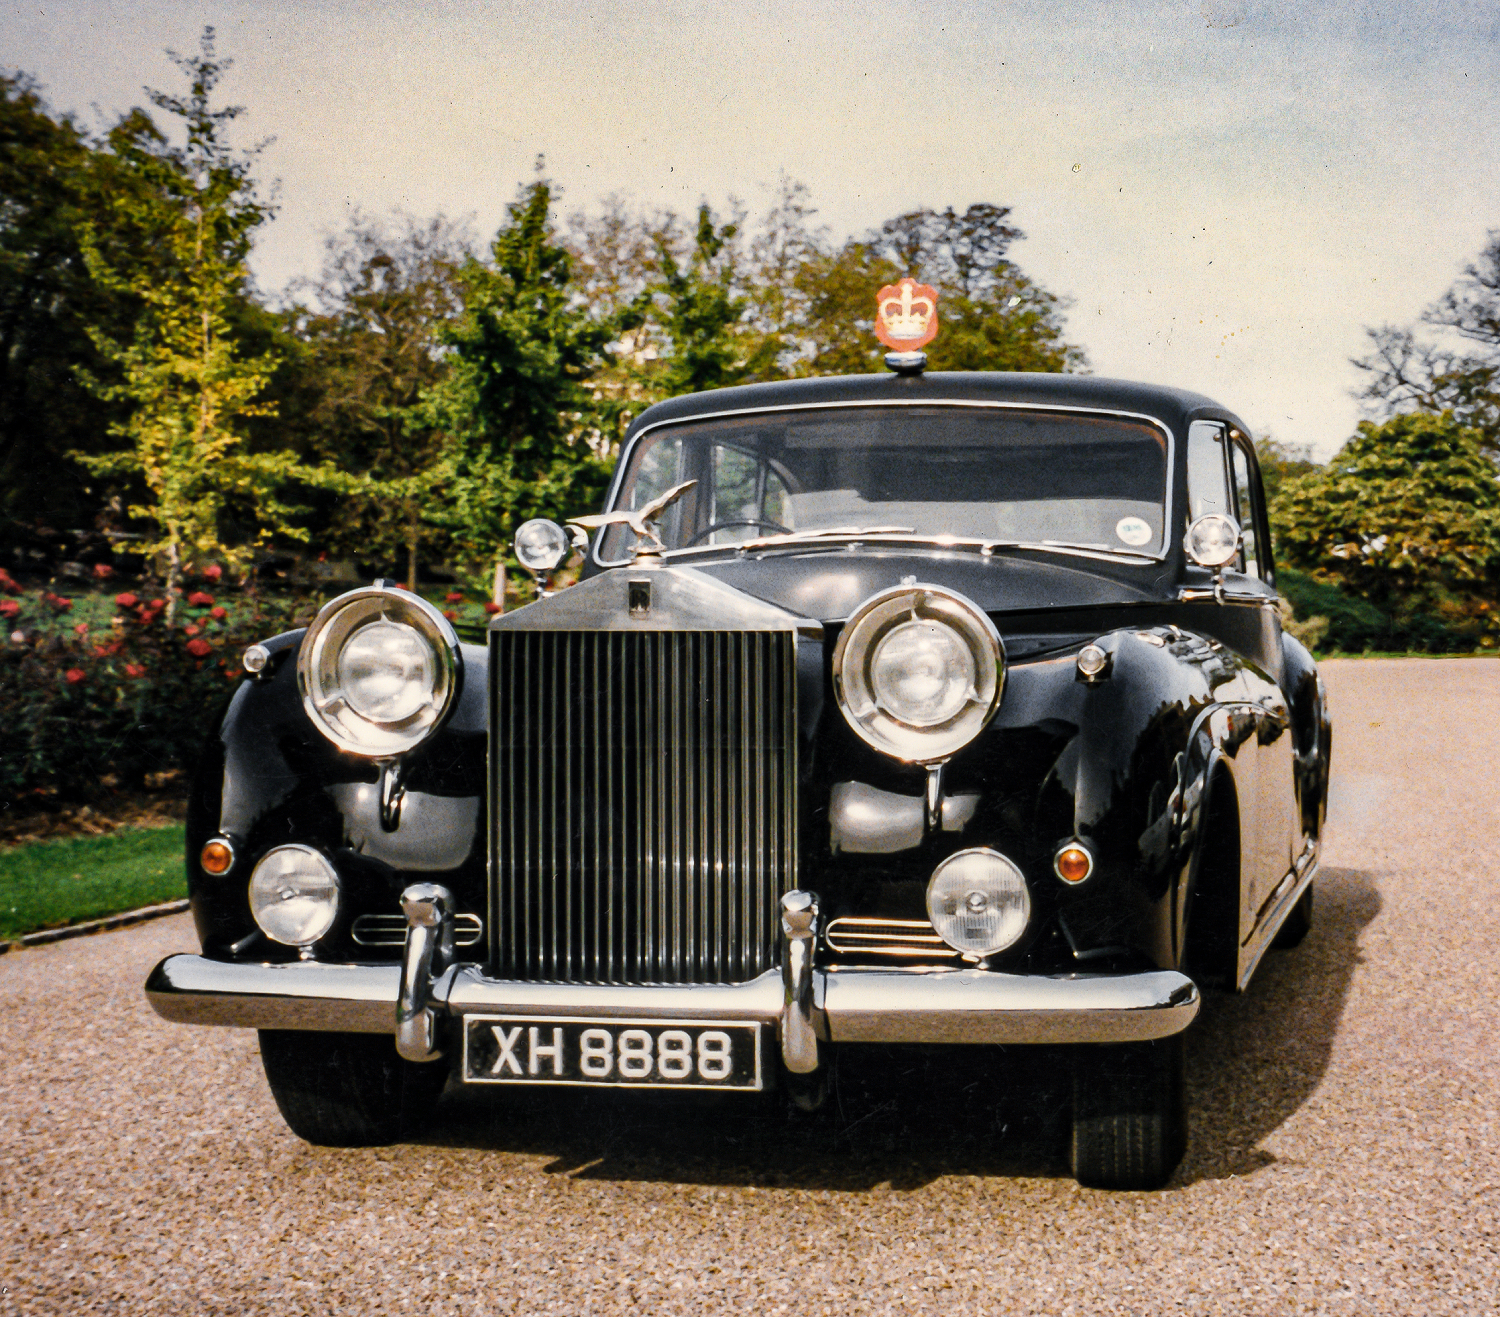 The Rolls-Royce Black Badge 1960 Phantom V